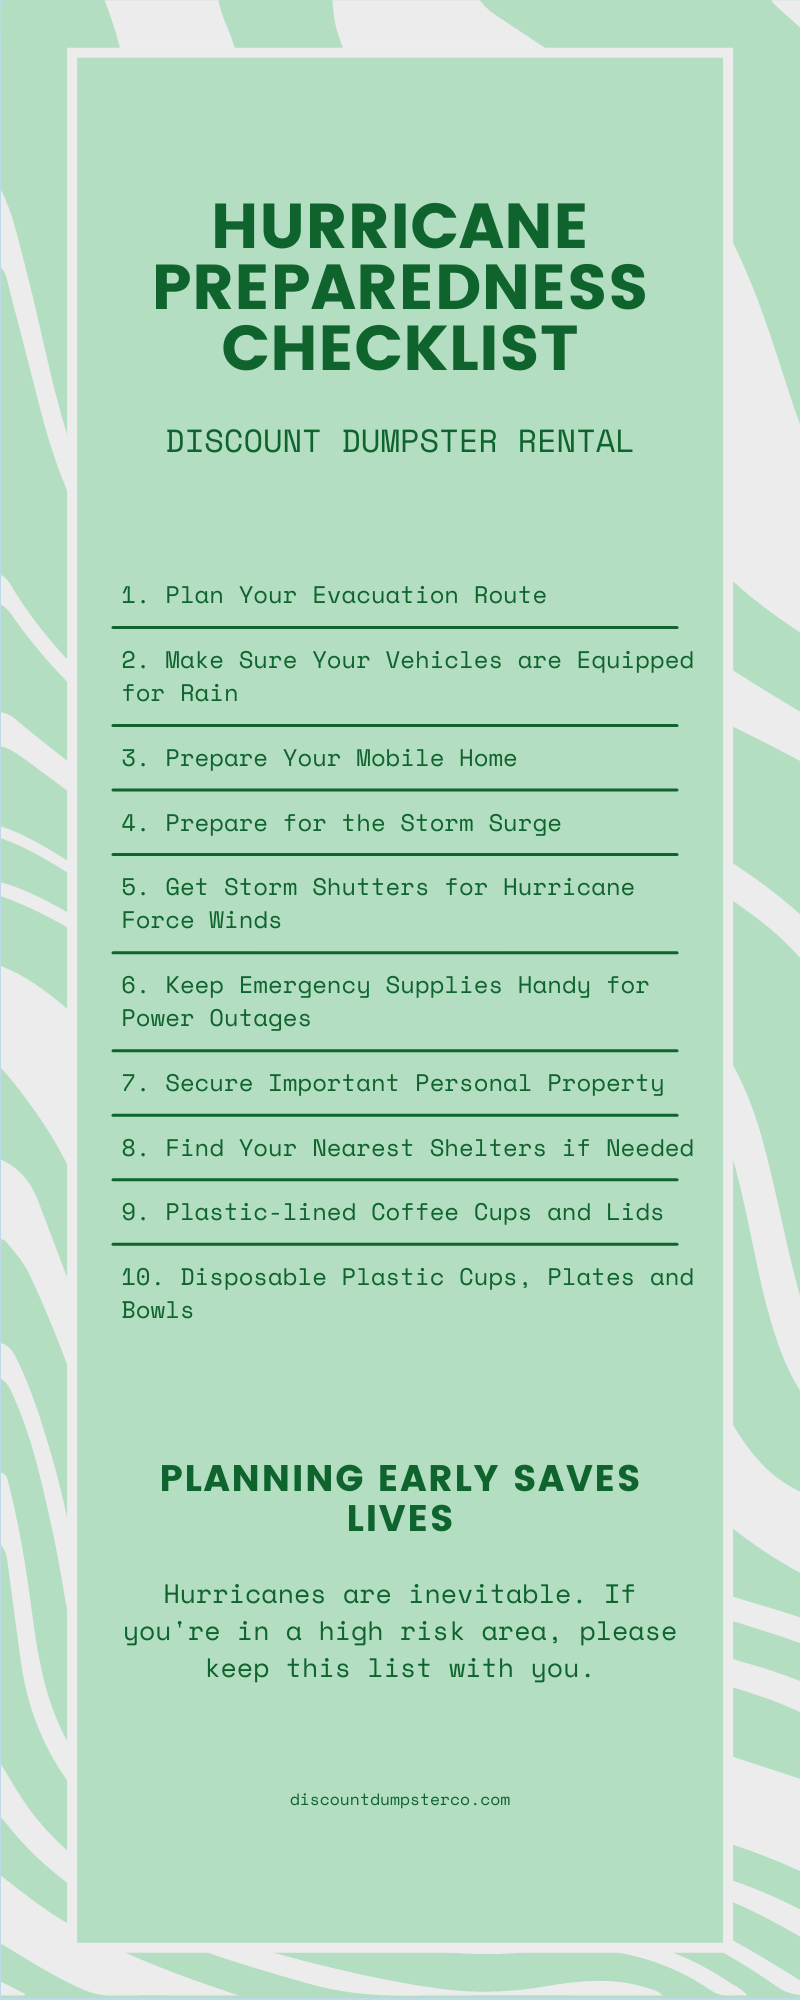 Hurricane preparedness checklist